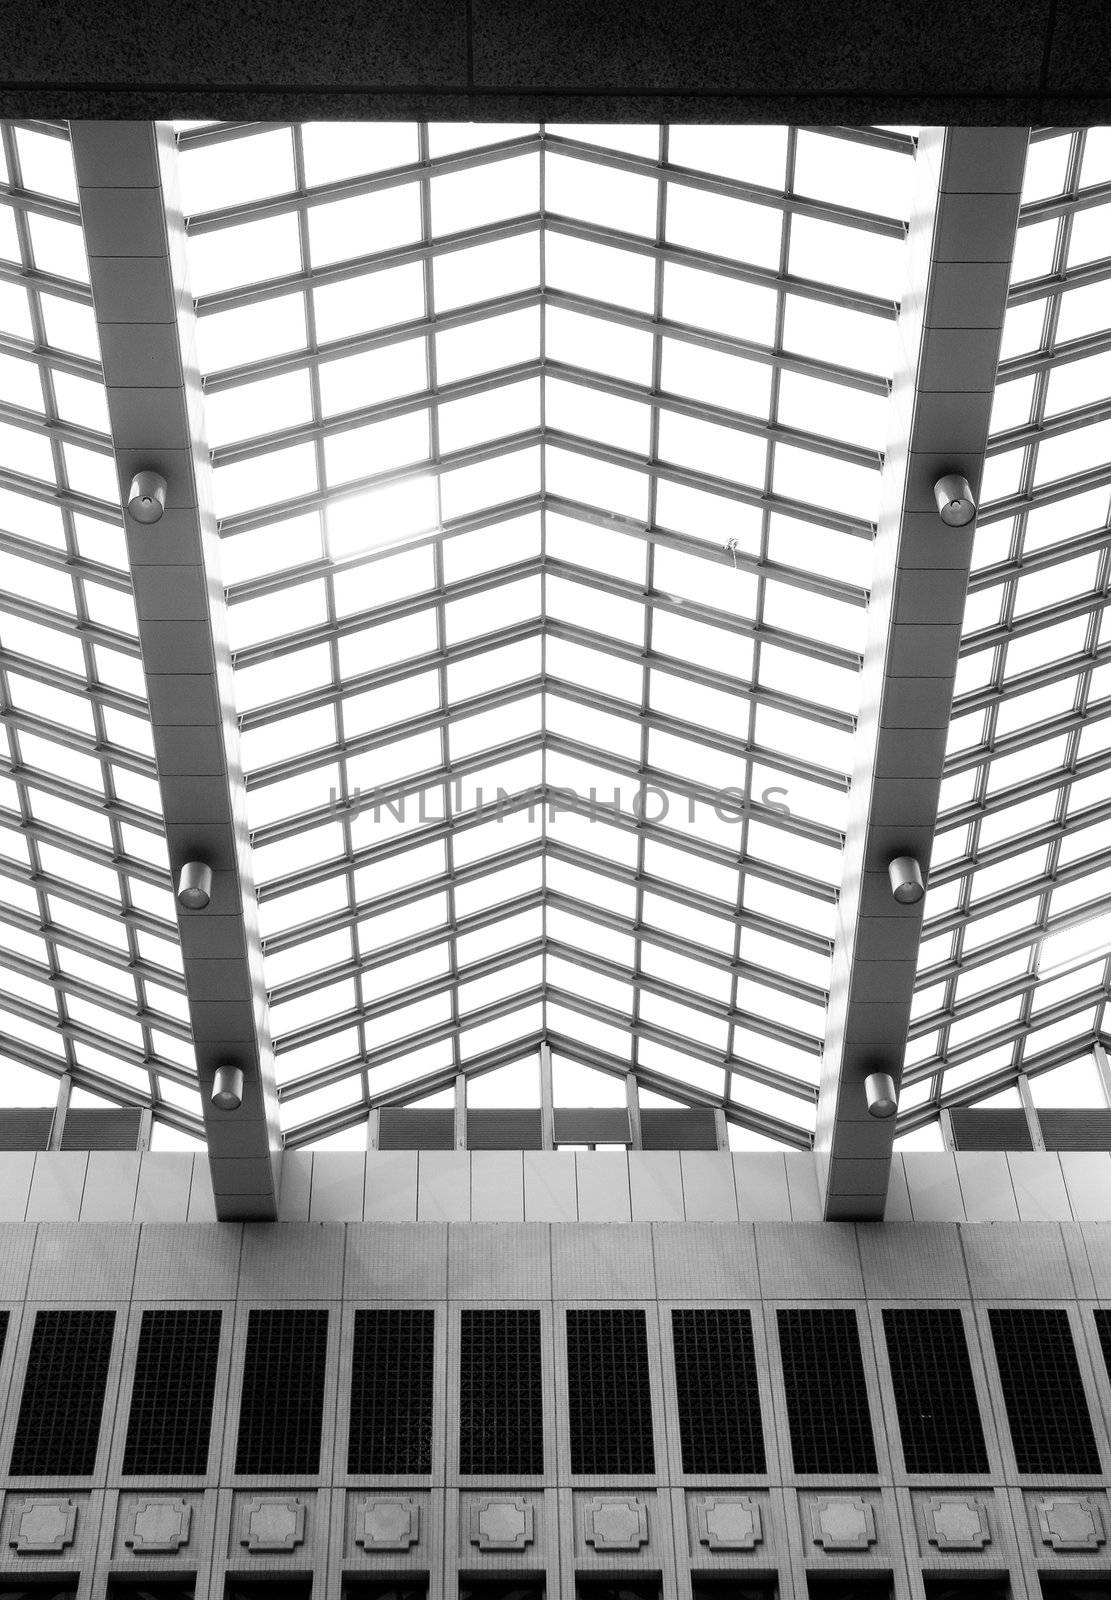 abstract geometric ceiling by elwynn